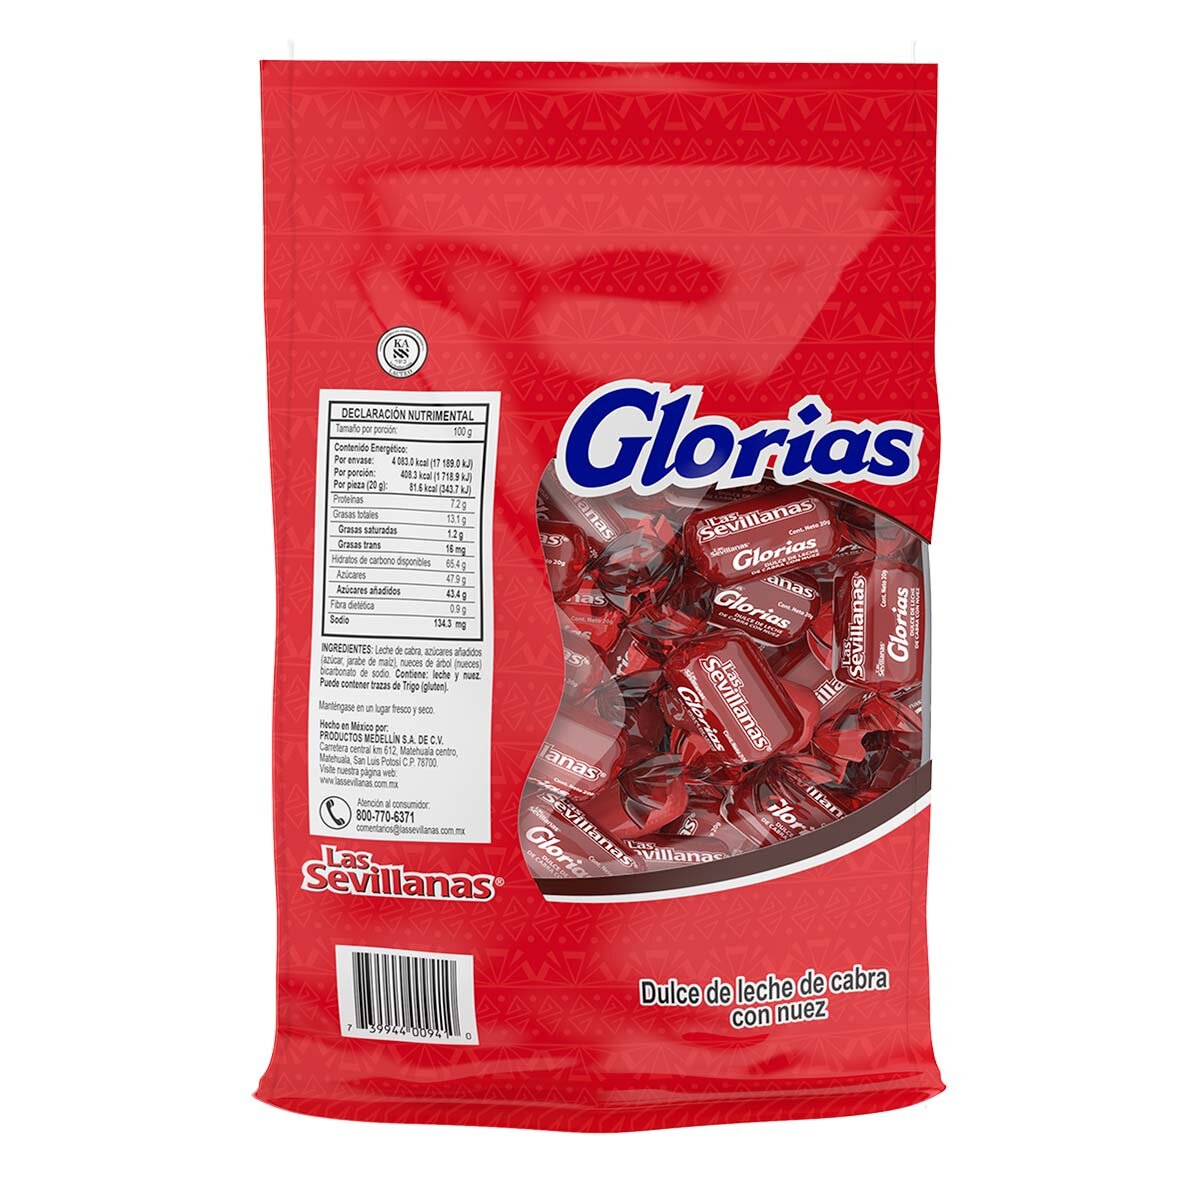 Las Sevillanas Glorias con Nuez 50 pzas de 20 g